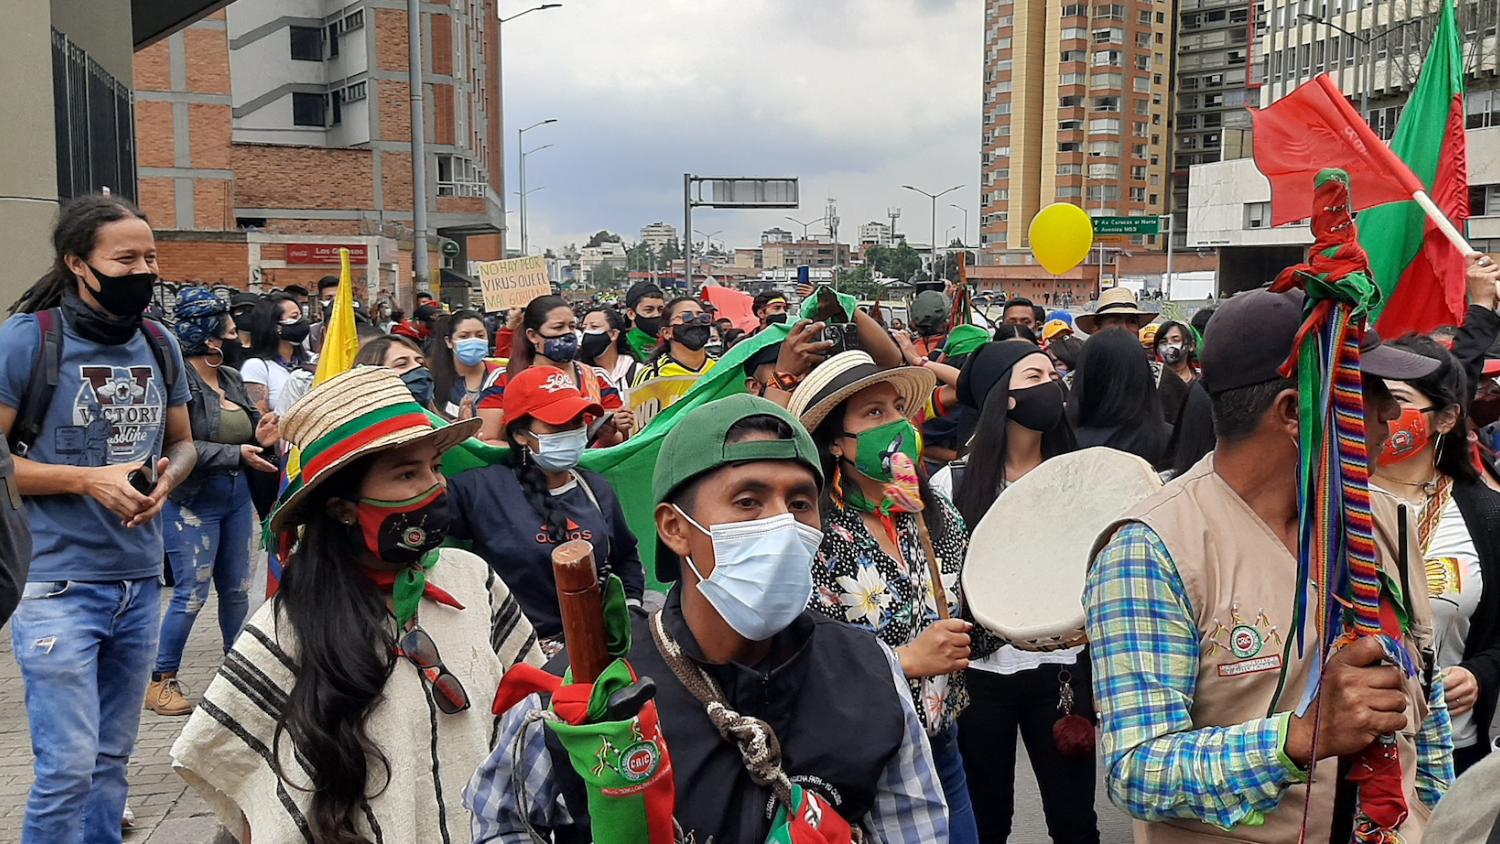 In vielen Städten Kolumbiens regt sich Protest gegen  soziale Missstände. Mancherorts wird er gewaltsam unterdrückt. Die Situation ist nach Einschätzung von Beobachtern von einer gefährlichen Eskalation geprägt. (c) Ismael Paredes